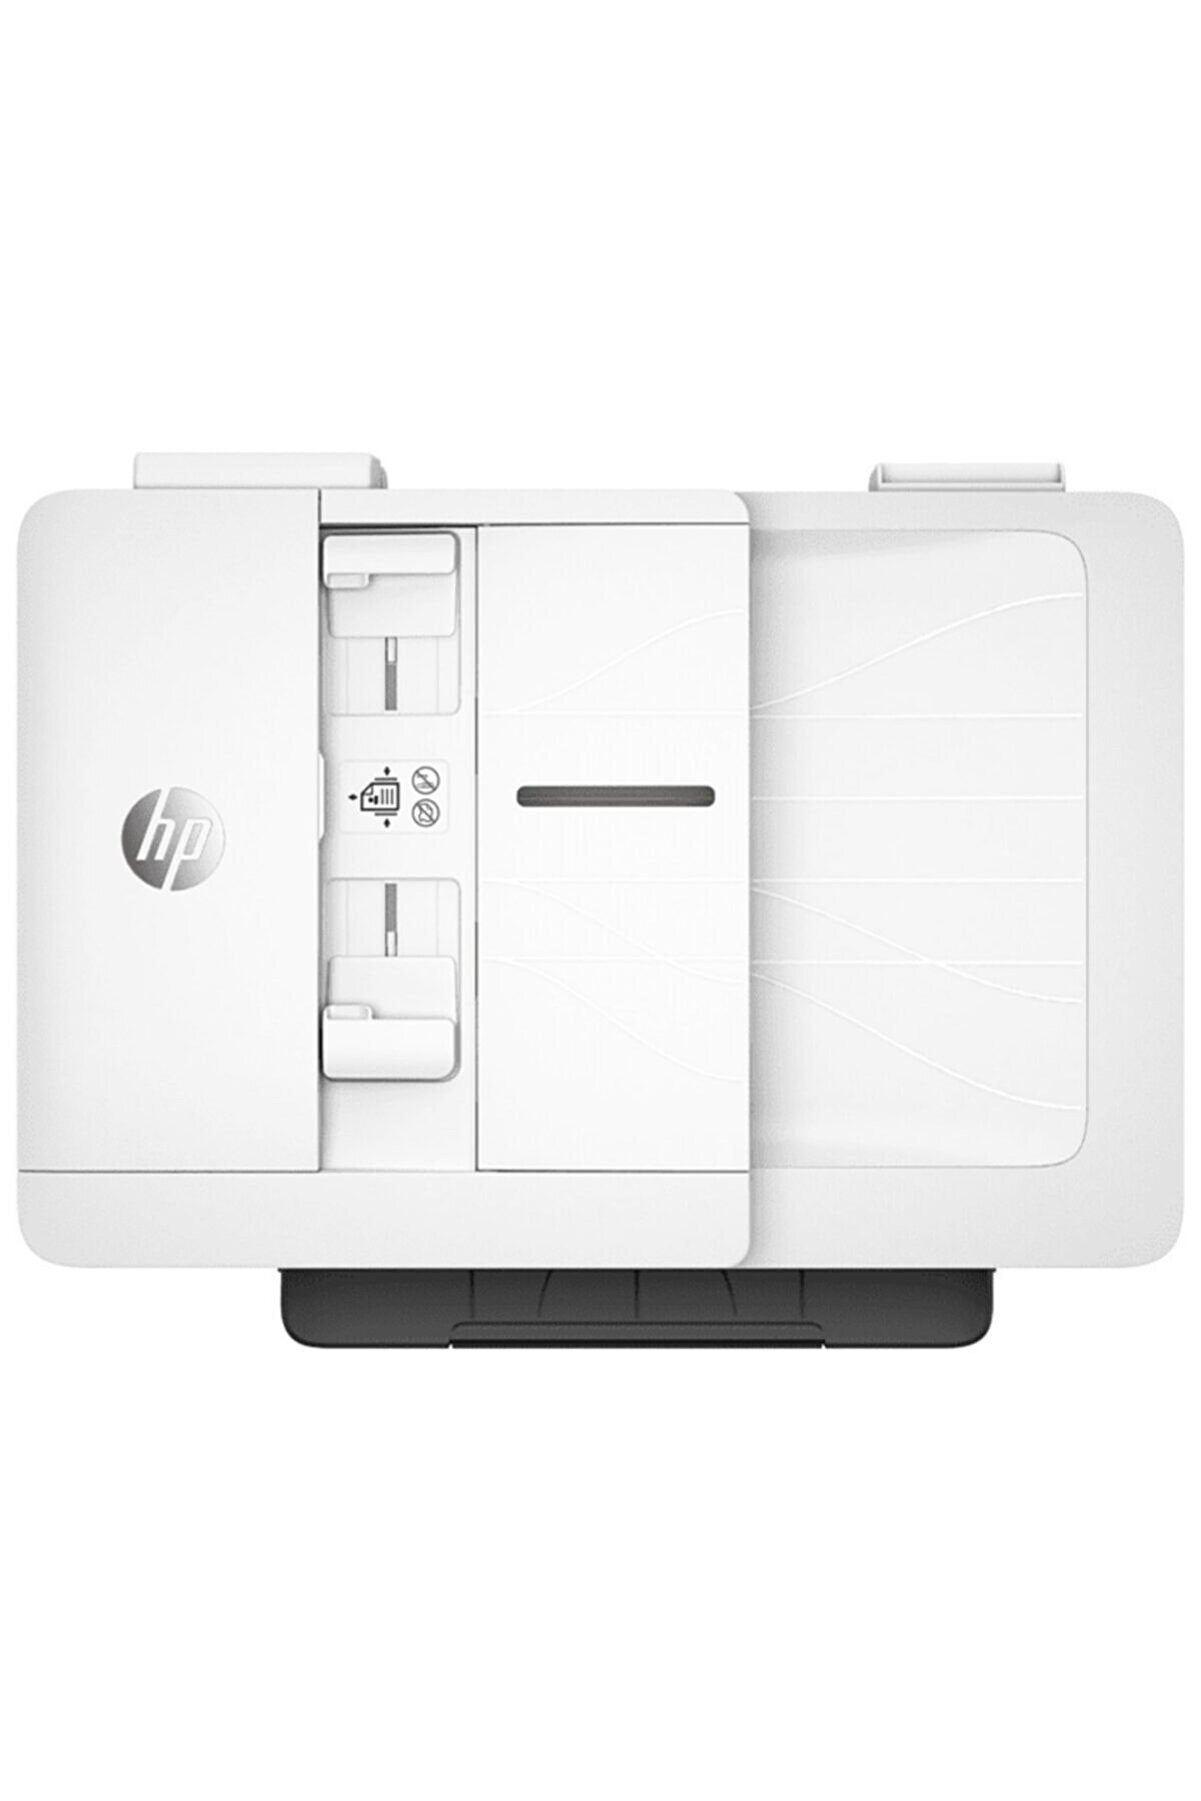 HP Officejet Pro 7740 Faks Tarayıcı Fotokopi Wi-fi A3 Renkli Yazıcı G5j38a